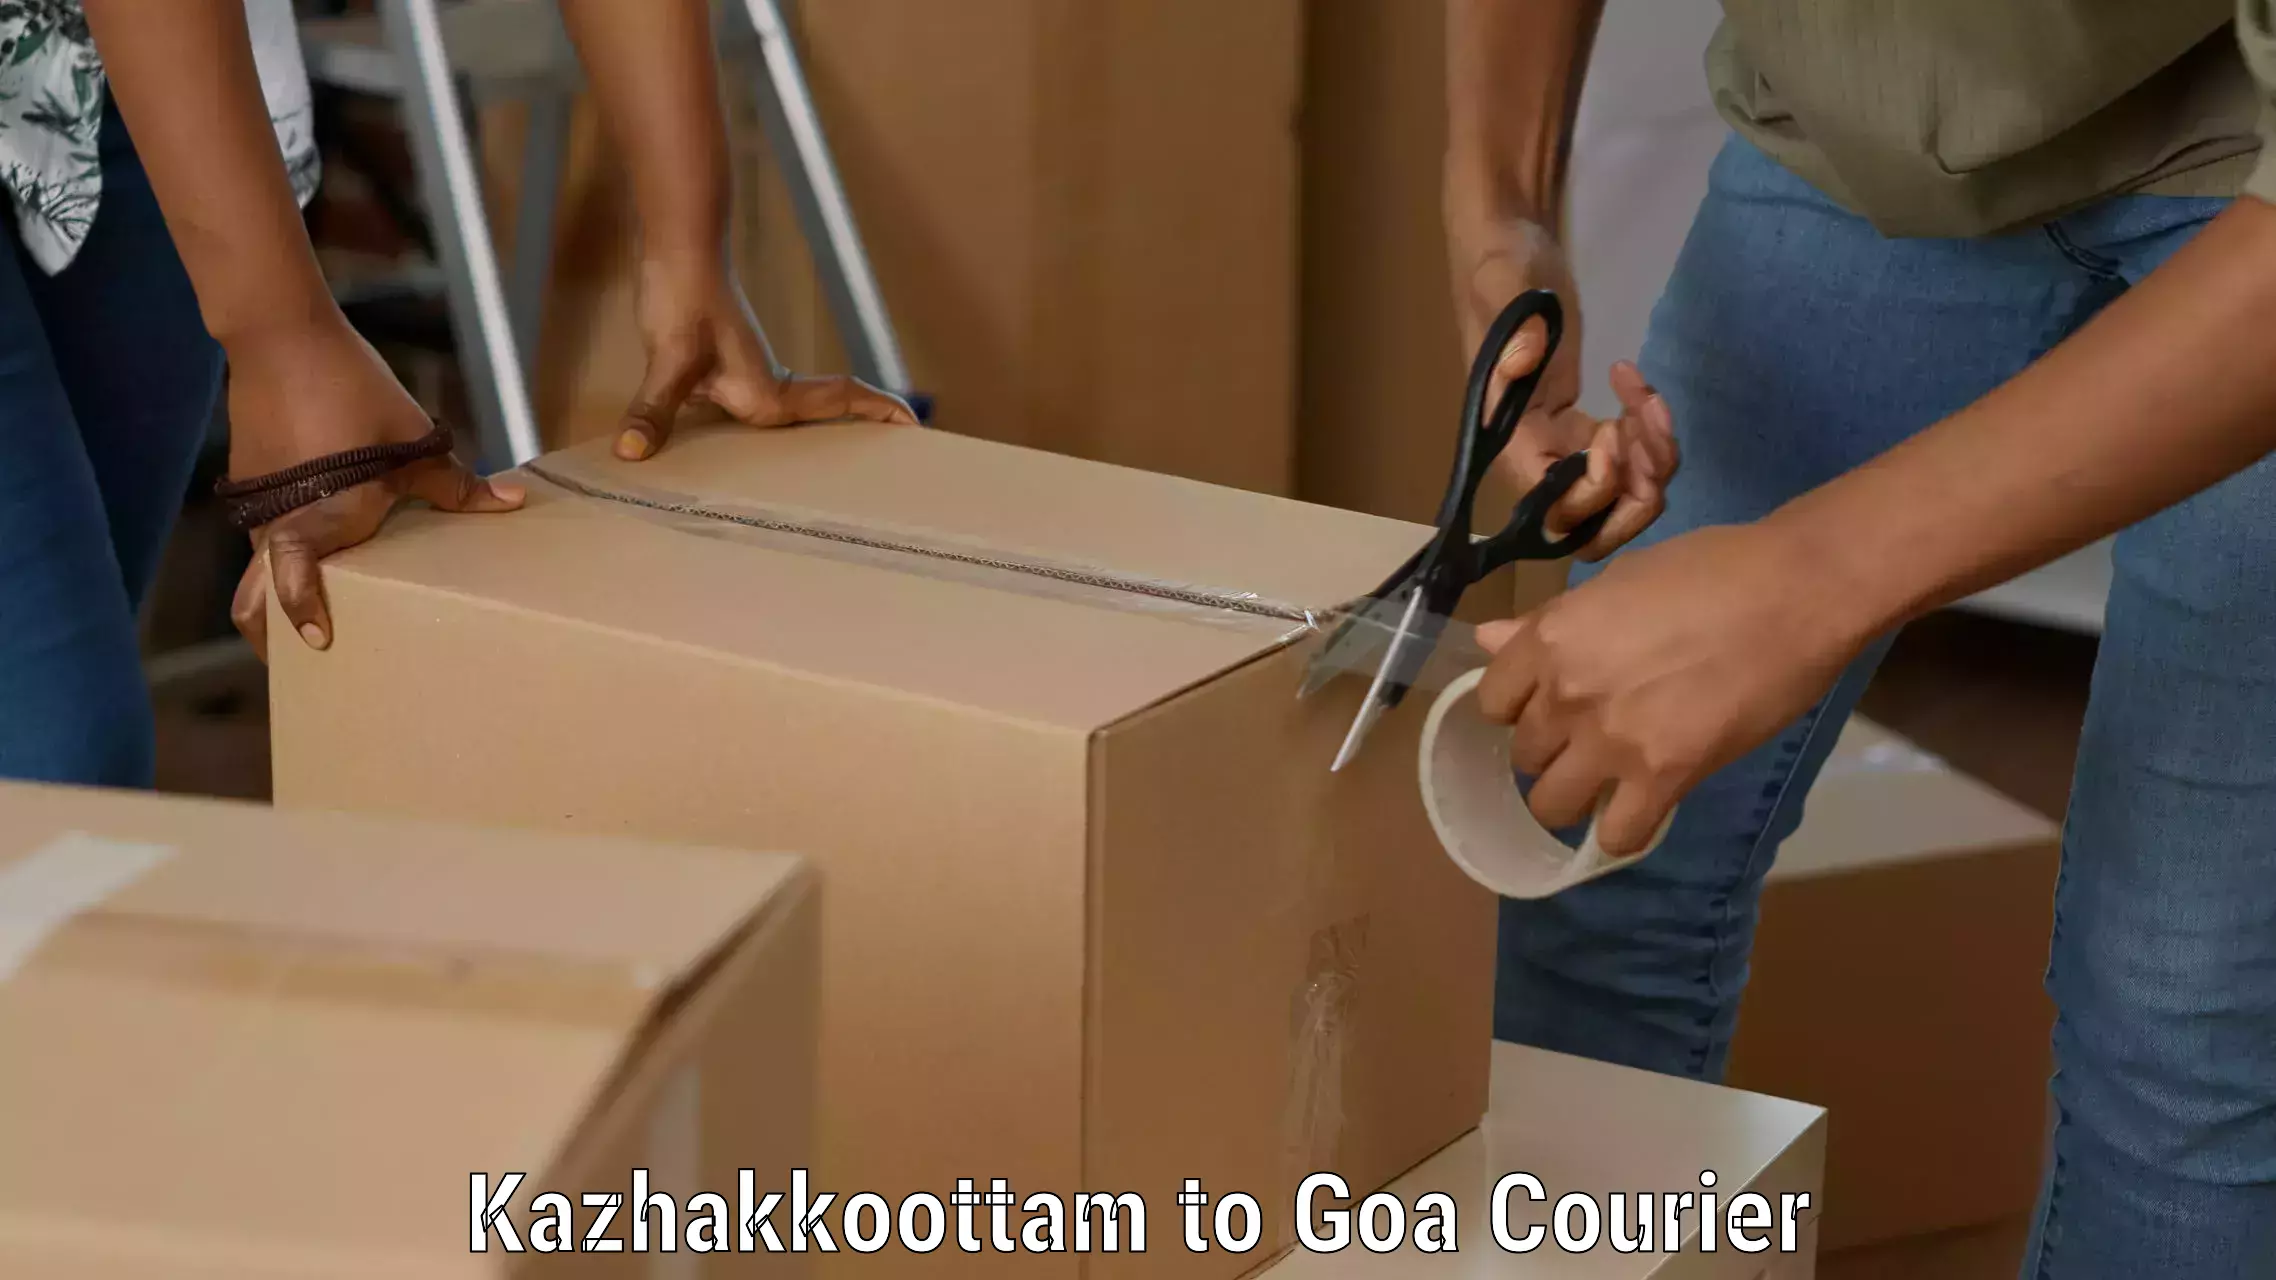 Nationwide shipping coverage Kazhakkoottam to IIT Goa